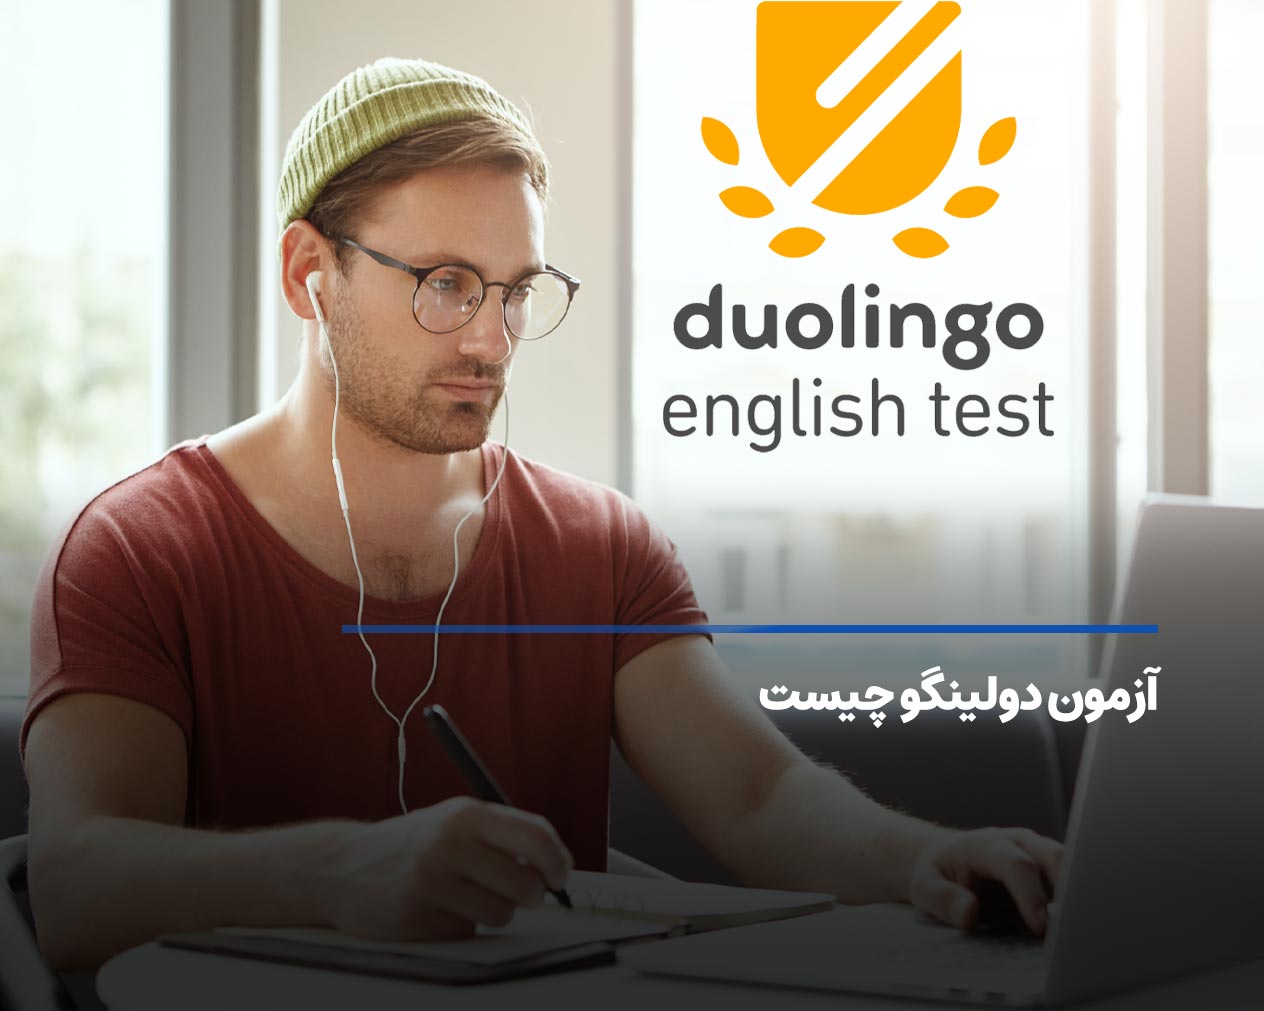 آزمون دولینگو چیست؛ آشنایی با آزمون Duolingo